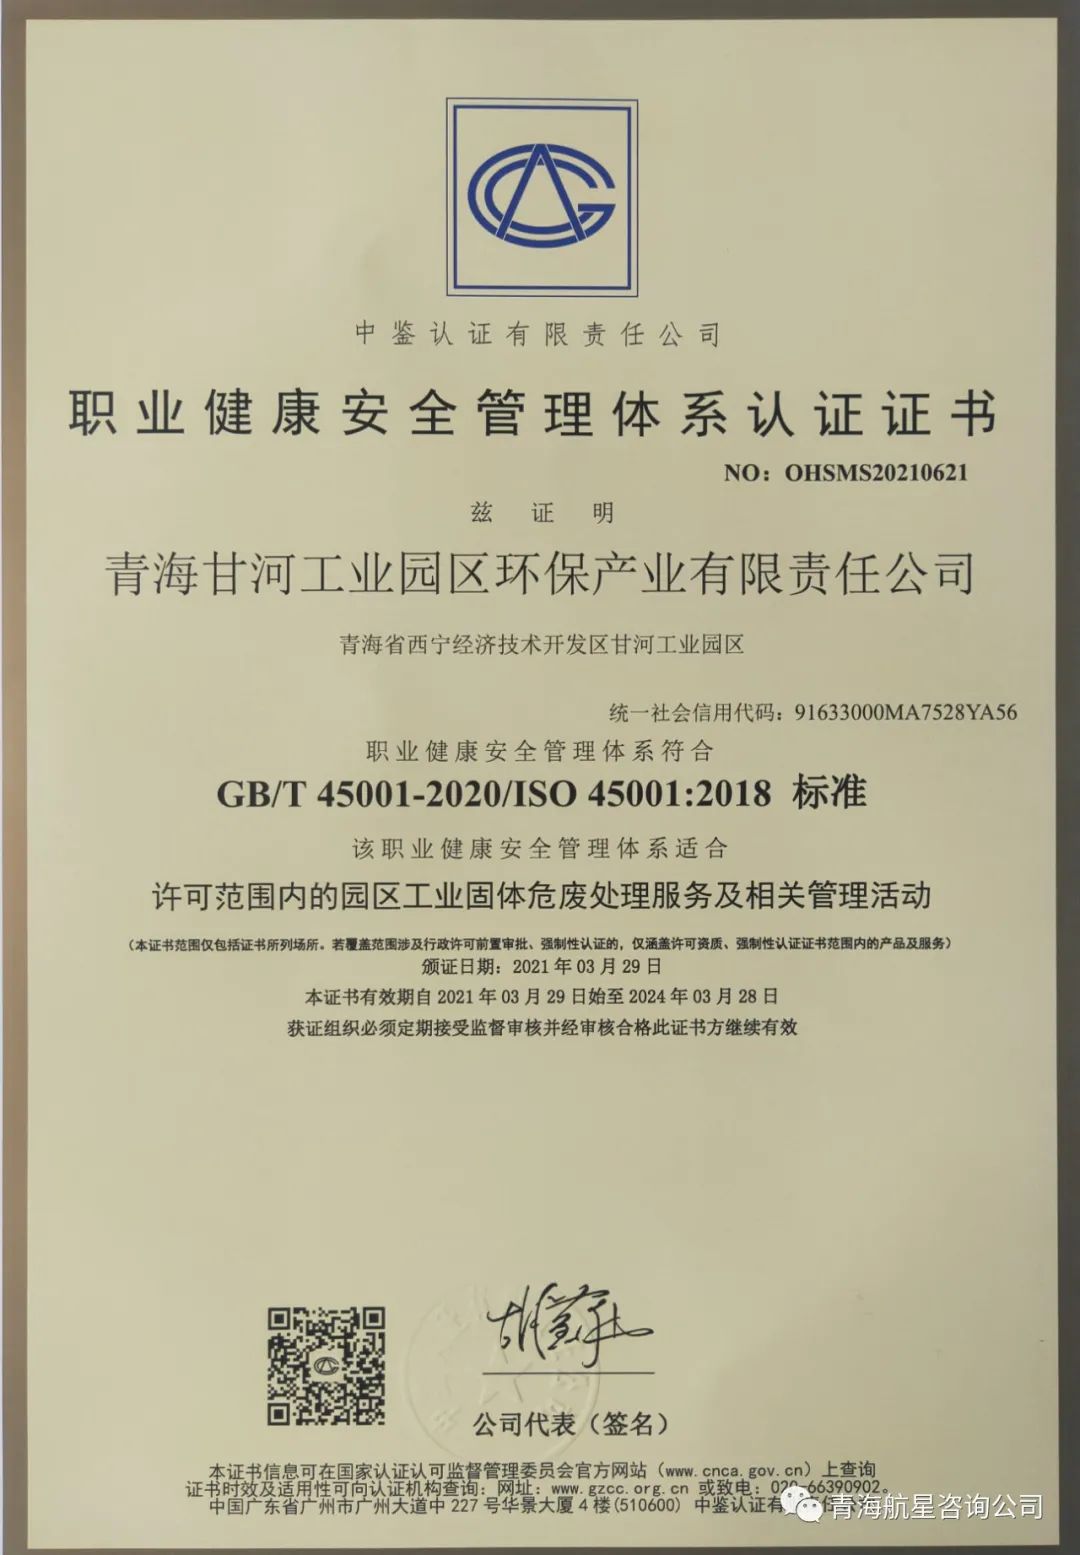 热烈庆祝 青海甘河工业园区环保产业有限责任公司 顺利通过质量、环境、职业健康安全管理体系认证